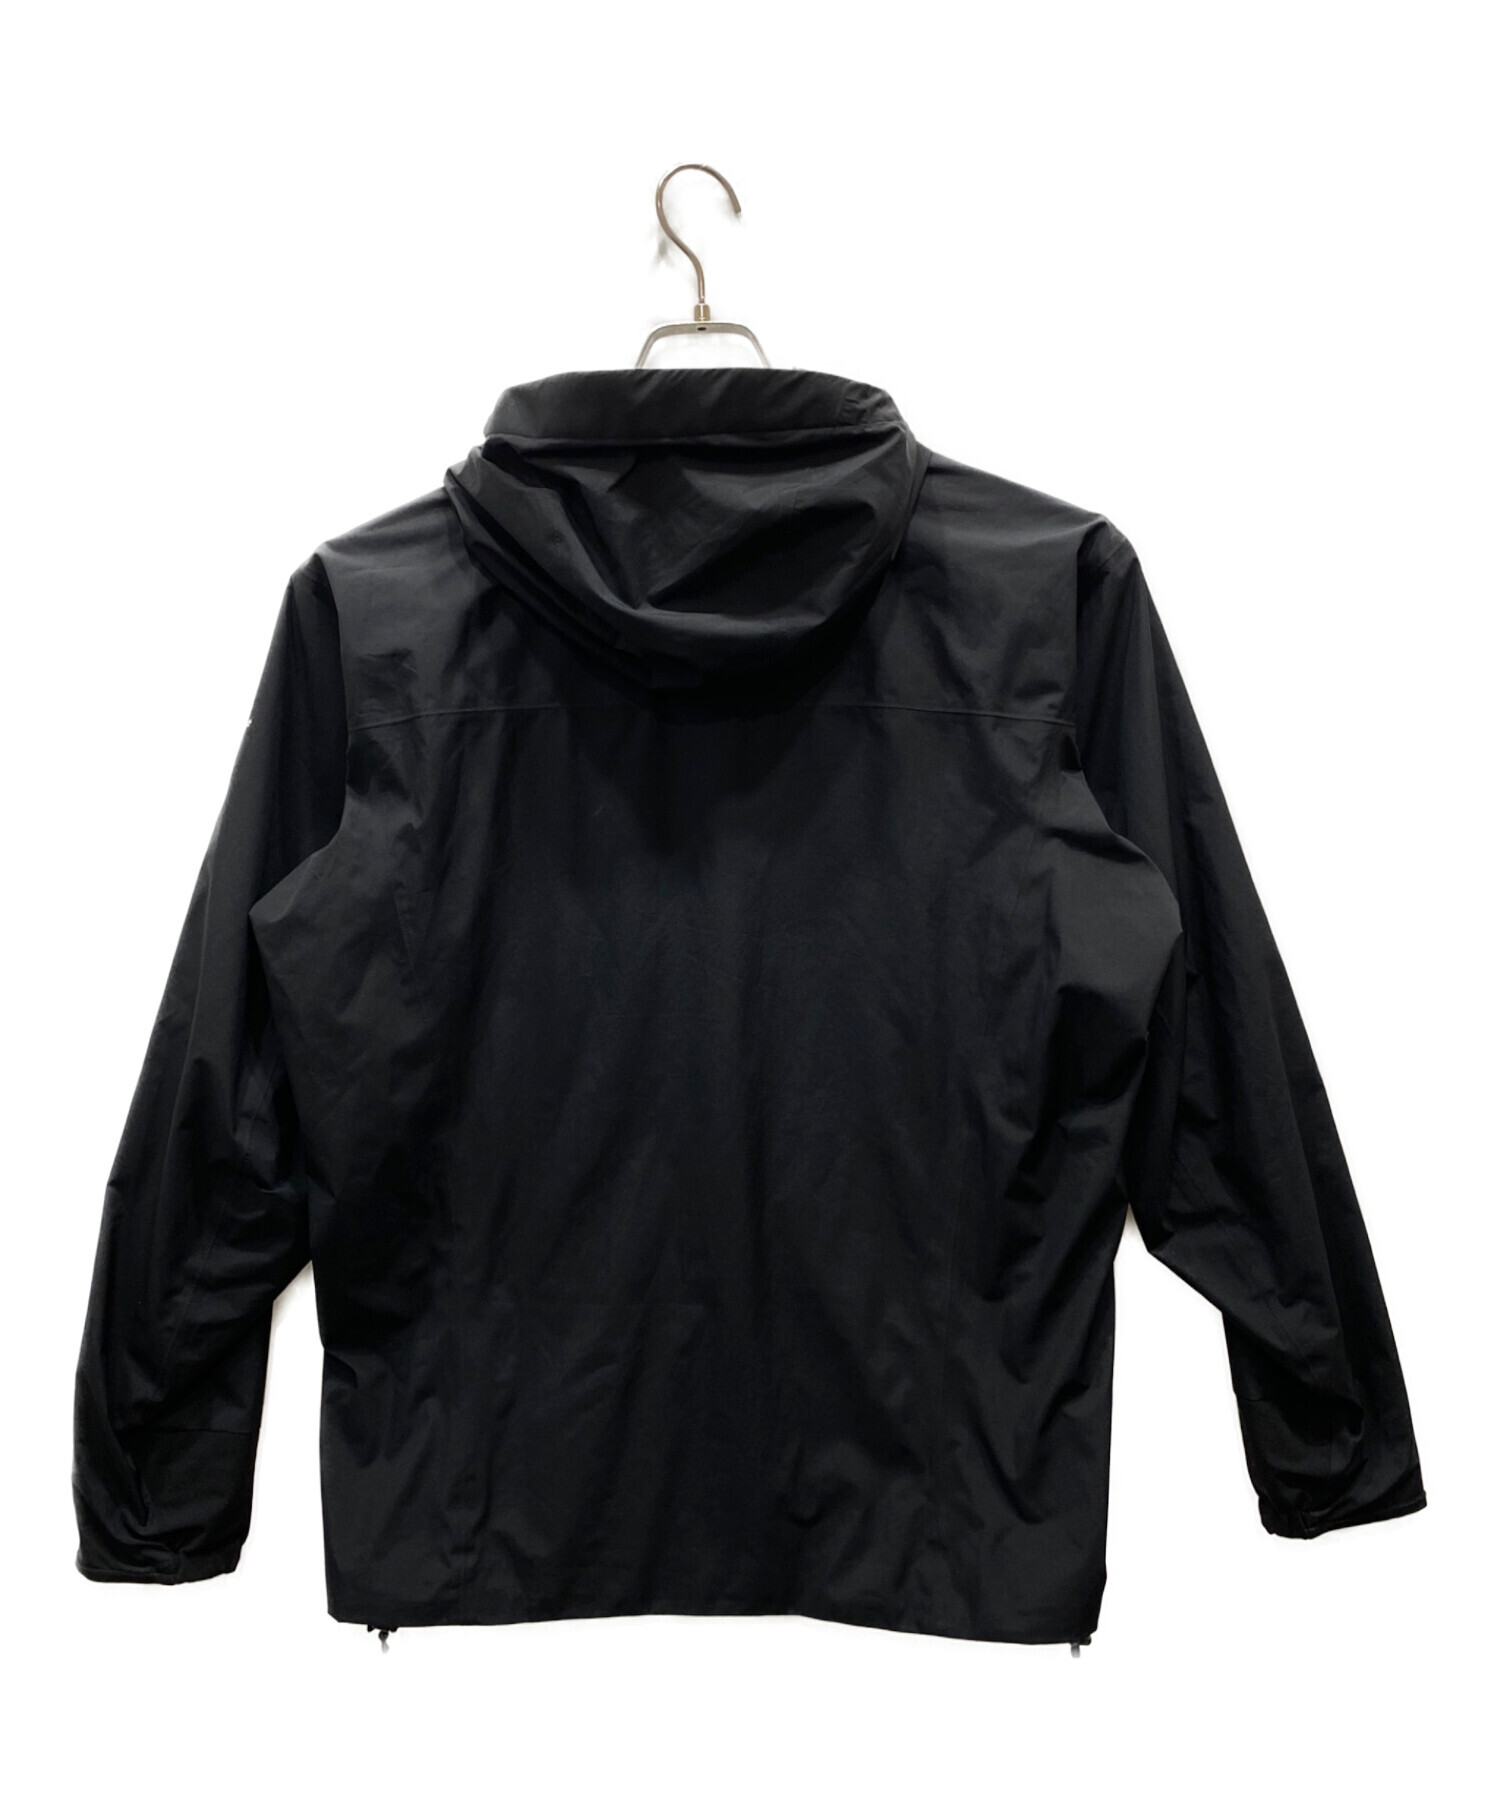 ARC'TERYX (アークテリクス) Solano Jacket ブラック サイズ:M